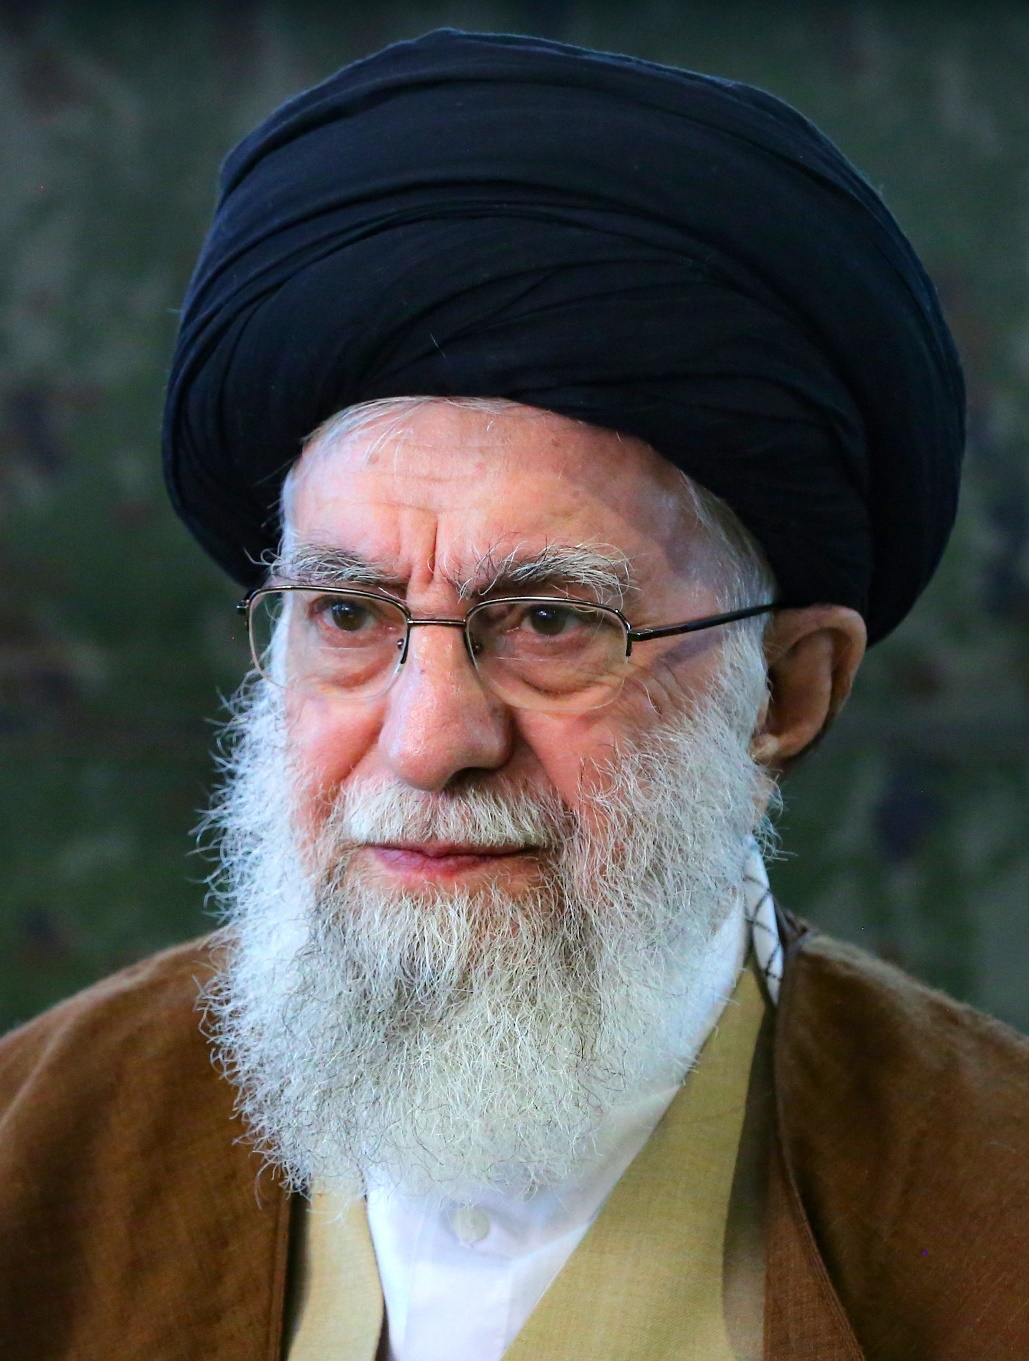 auteur Ali Khamenei de la citation Afin de menacer l'Iran, vous [l'Amérique] dites que vous pouvez sécuriser le flux d'énergie dans la région. Vous avez tort. Méfiez-vous que si vous faites la moindre erreur sur l'Iran, le flux d'énergie à travers cette région sera sérieusement mis en danger. Vous ne serez jamais capable de fournir une sécurité énergétique dans cette région. Vous n'êtes pas capable et vous devriez le savoir.